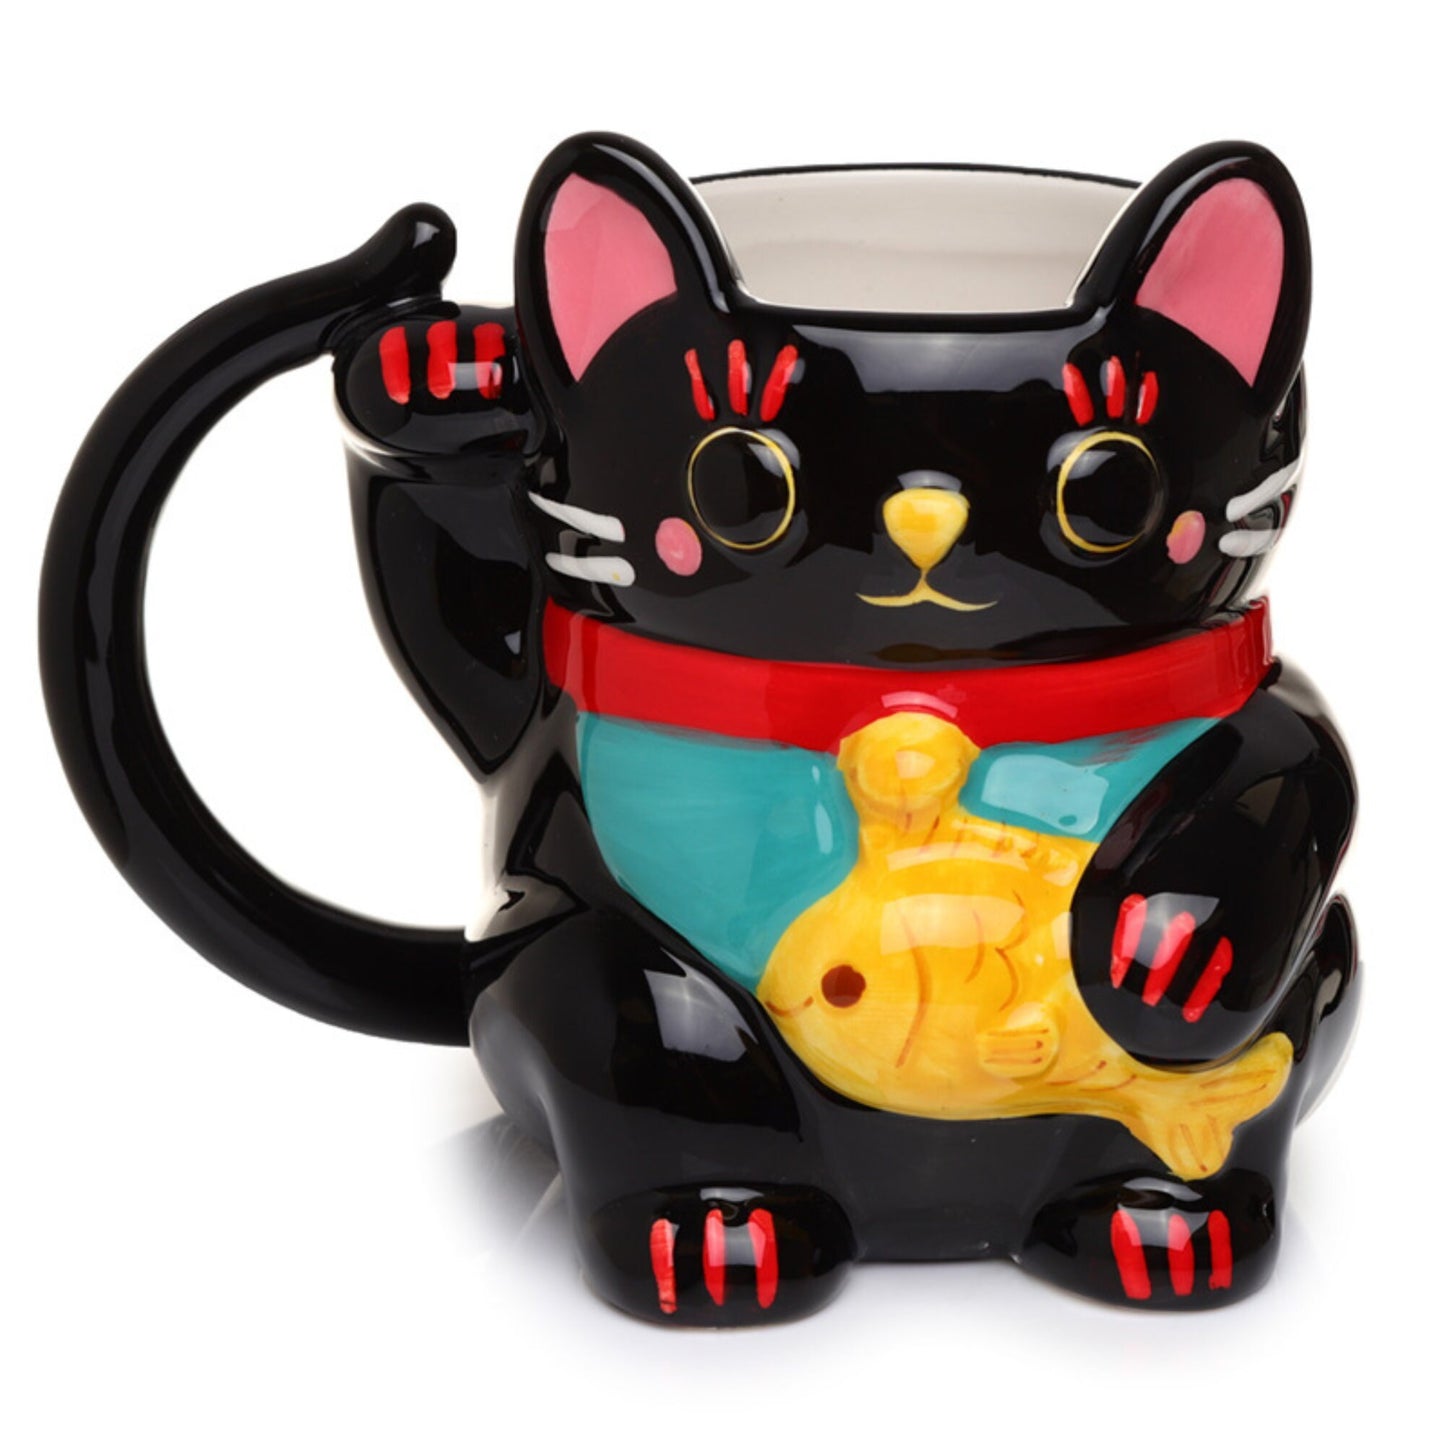 Lucky Cat Shaped Coffee Mug, Ceramic Maneki Neko Lucky Cat Shaped Mug, Present Fun Chinese Gift, Christmas Gift